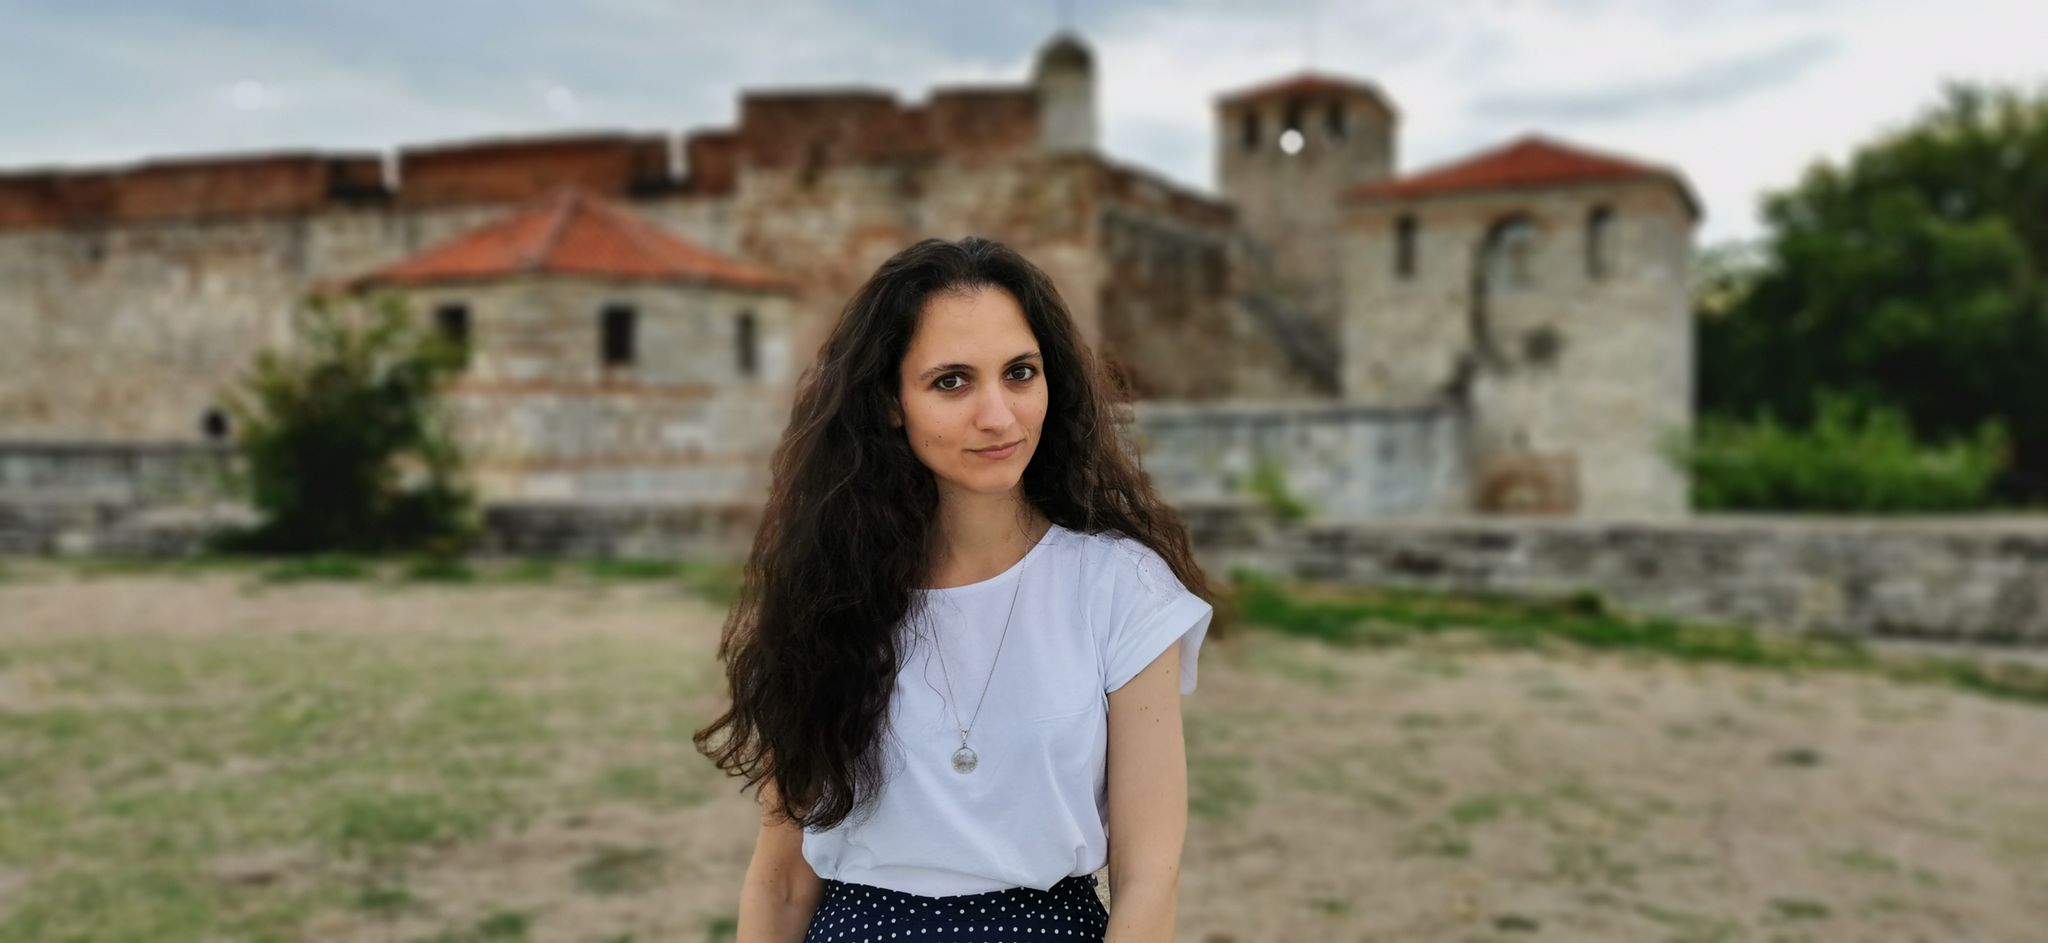 Български фентъзи роман разкрива тайните на крепостта "Баба Вида"